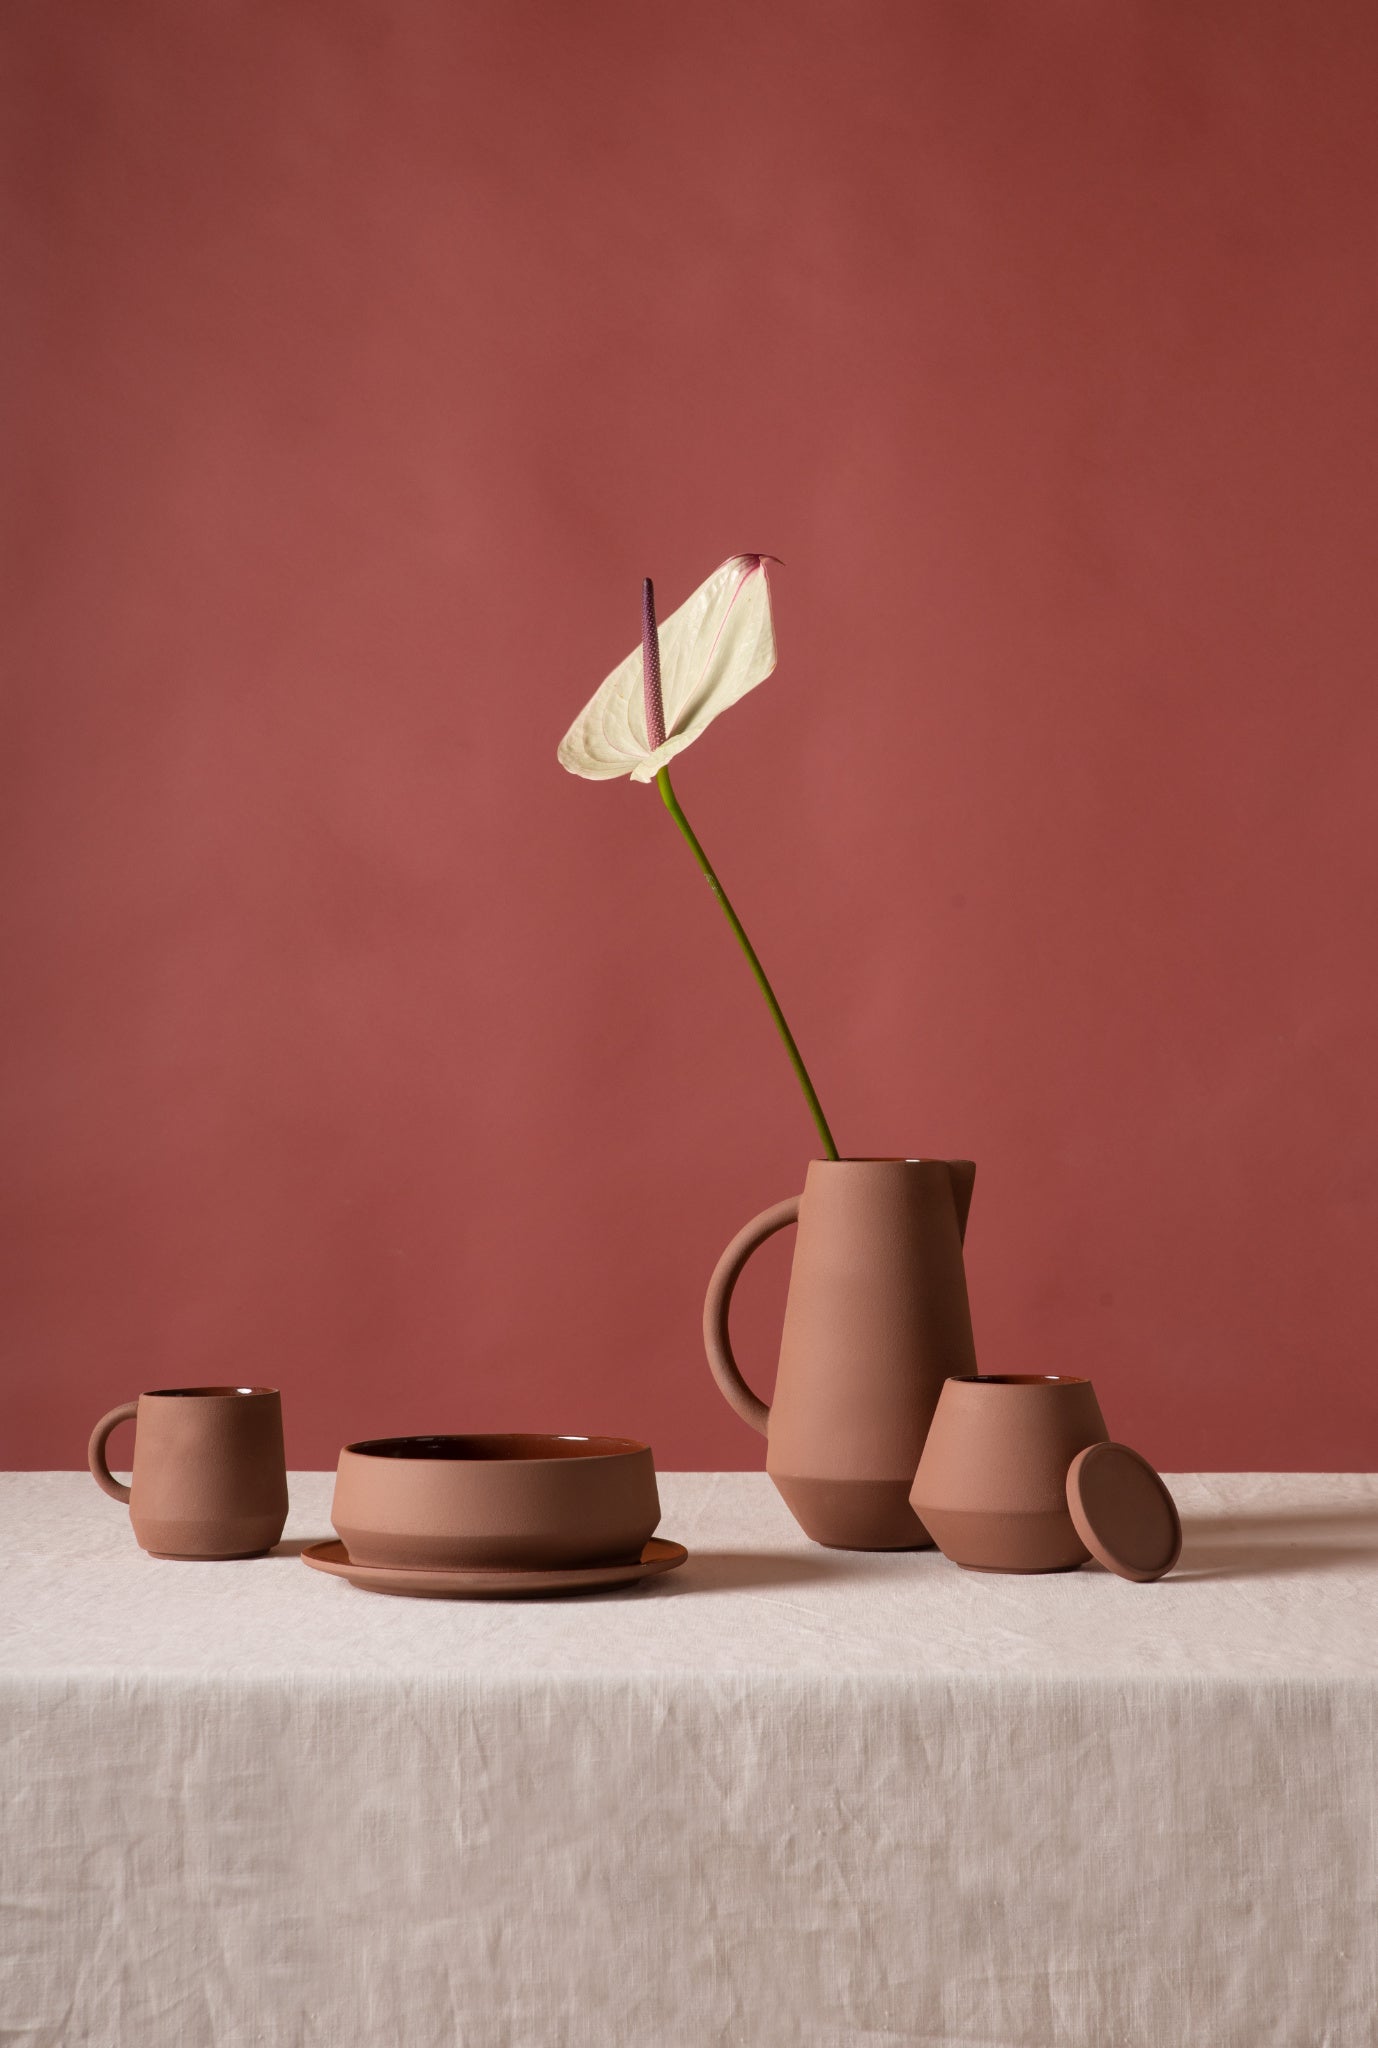 Unison Geschirr aus Keramik von Schneid Studio in der Farbe Zimt